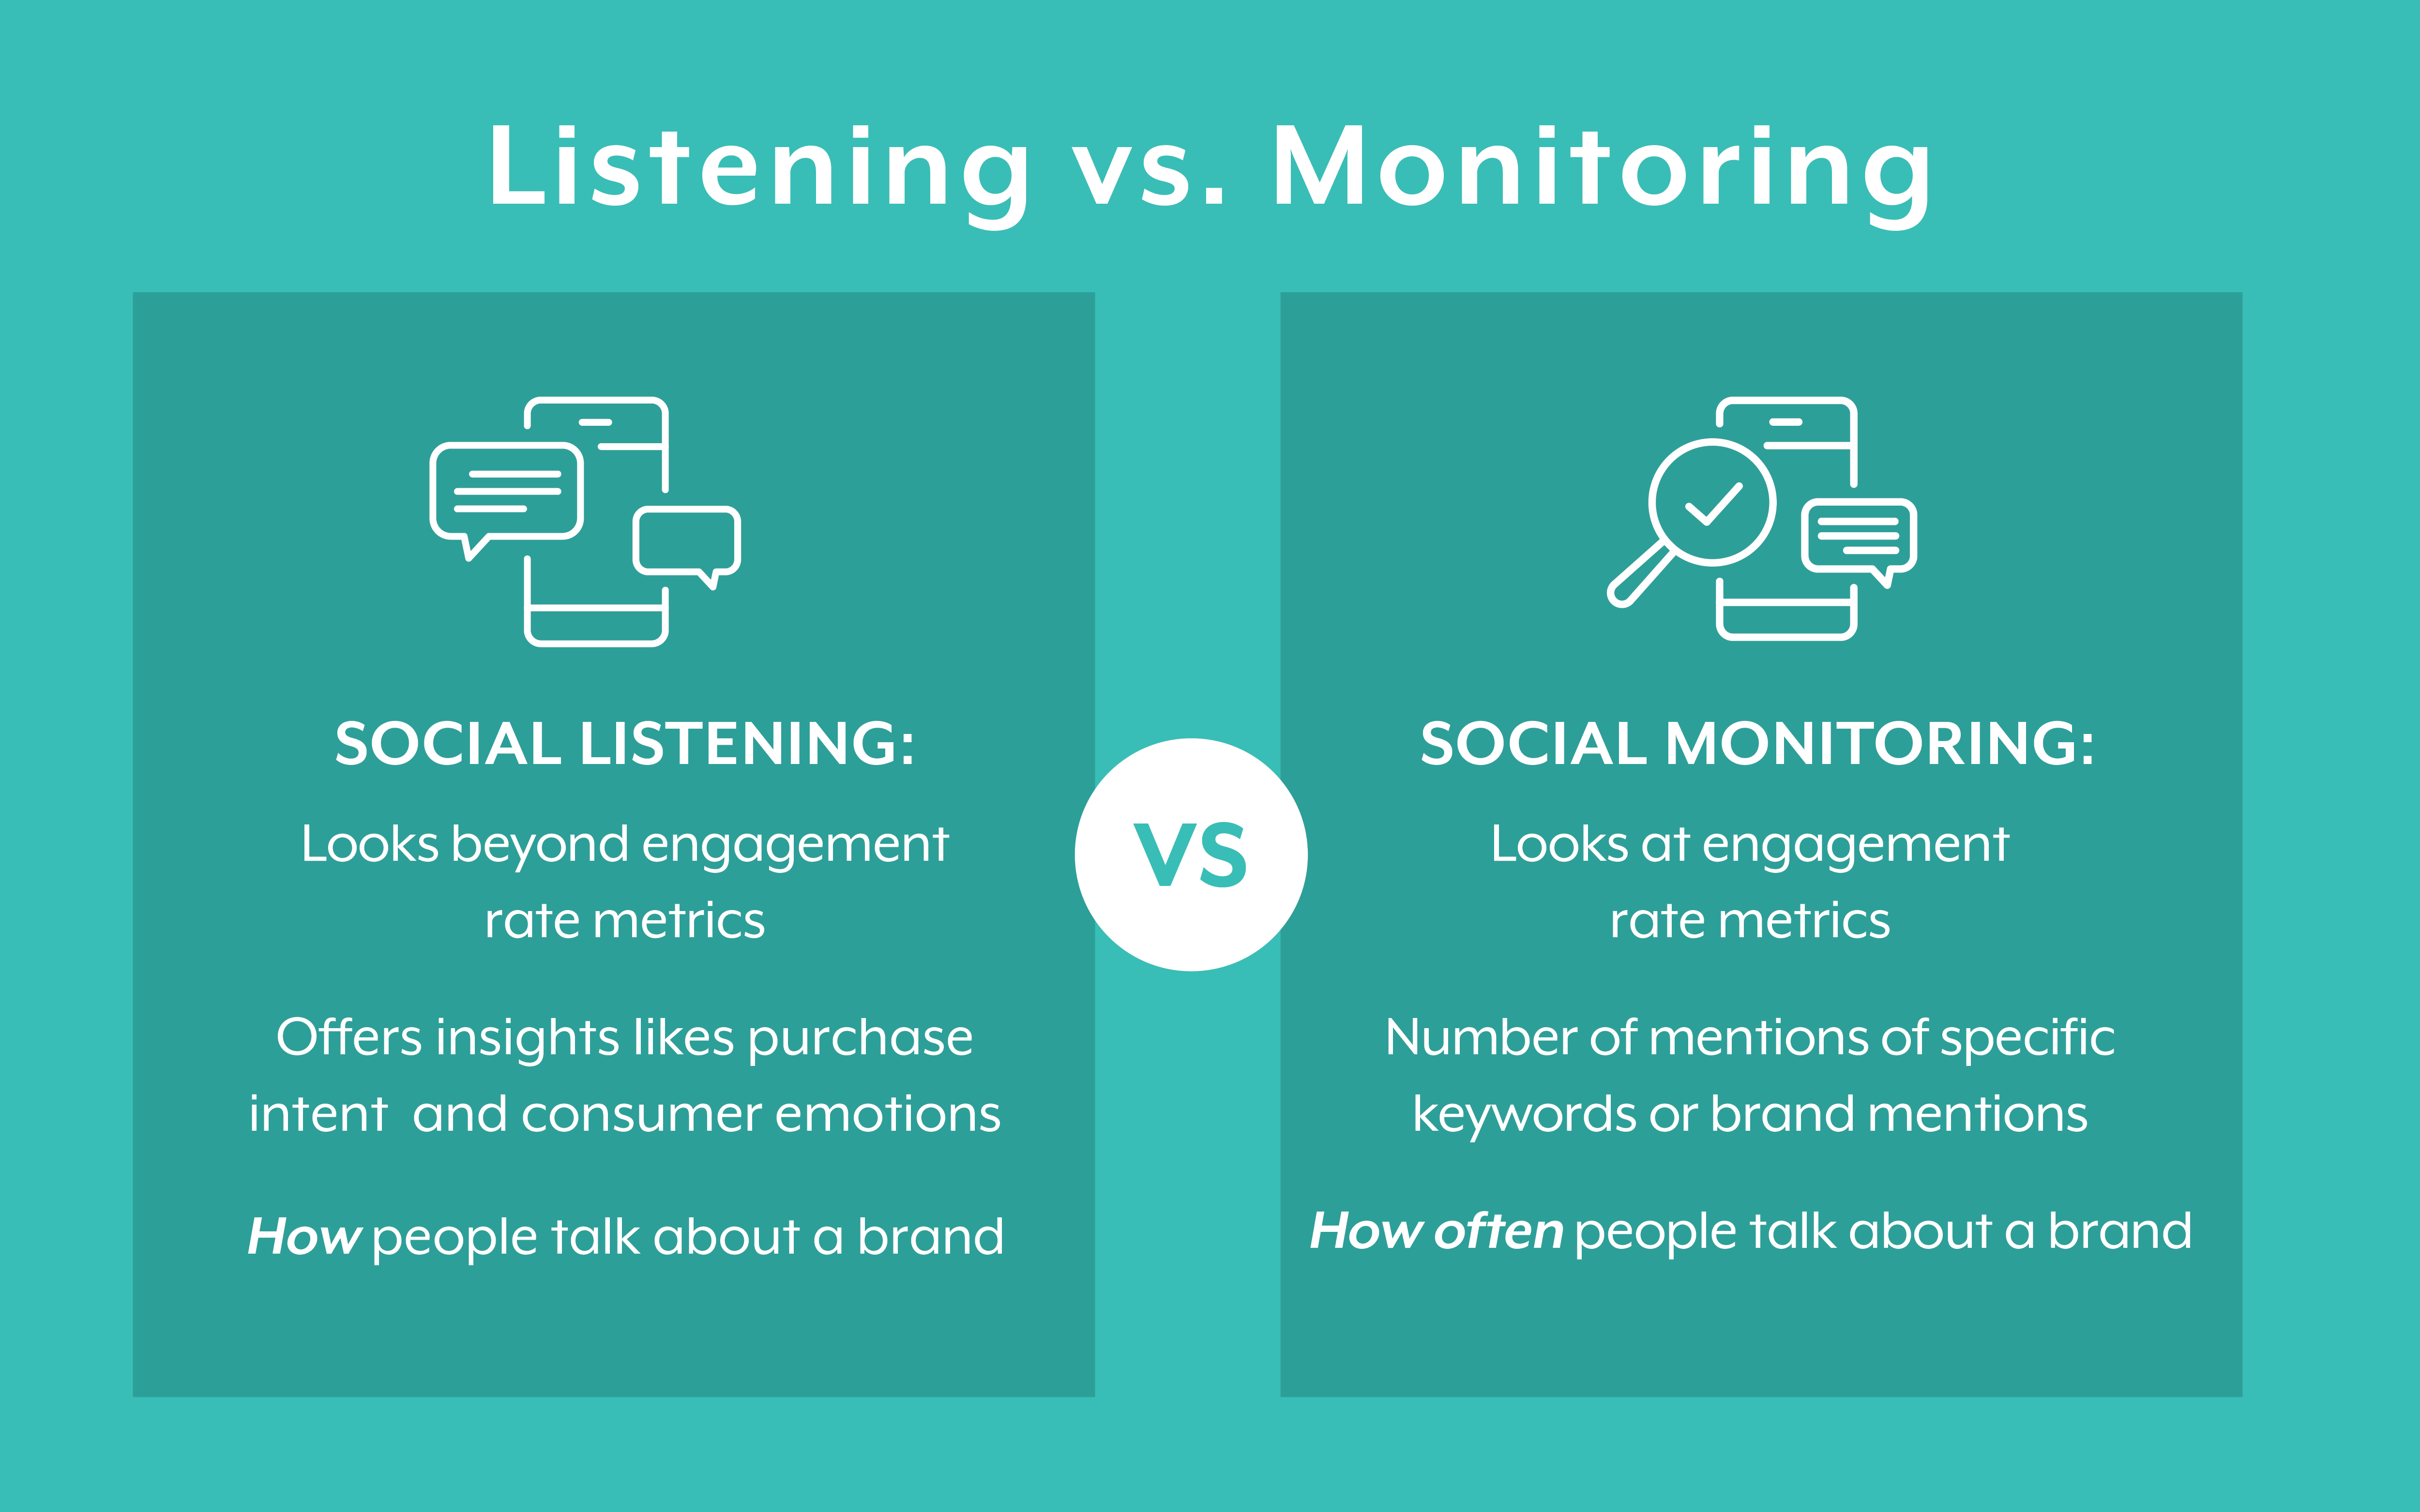 Listening vs monitoring